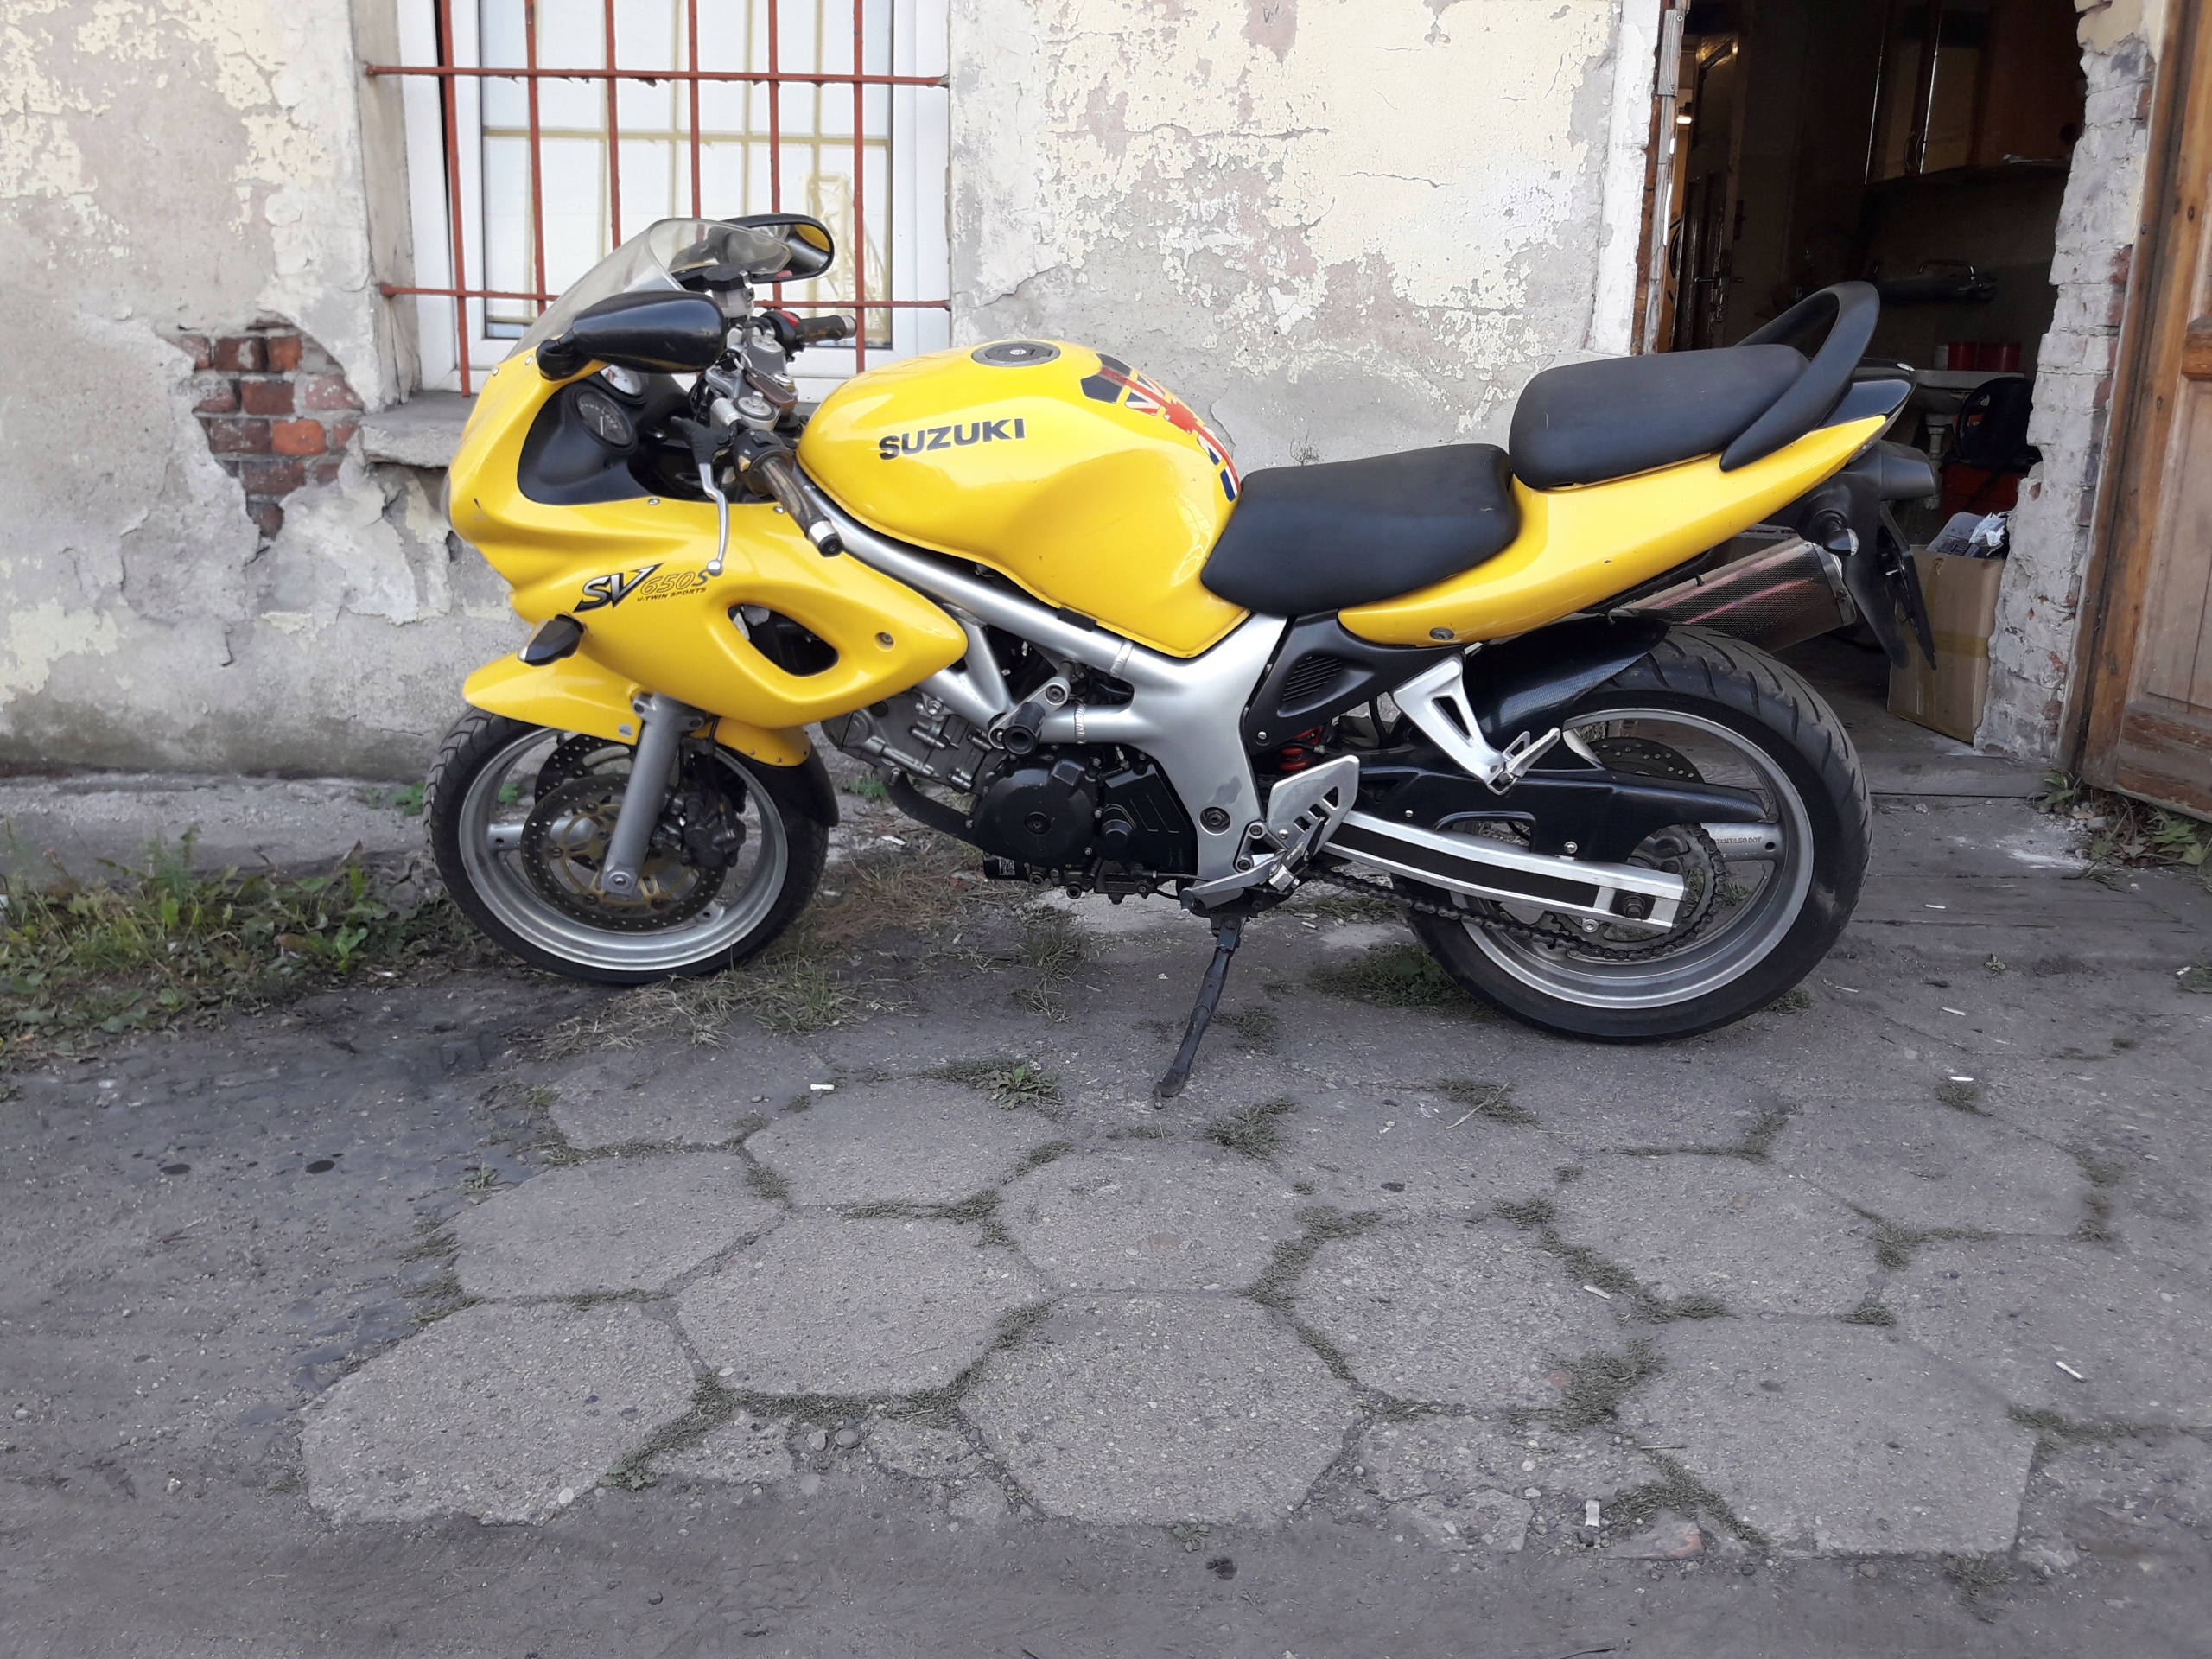 Motocykl Suzuki SV 650 S 7551843634 oficjalne archiwum